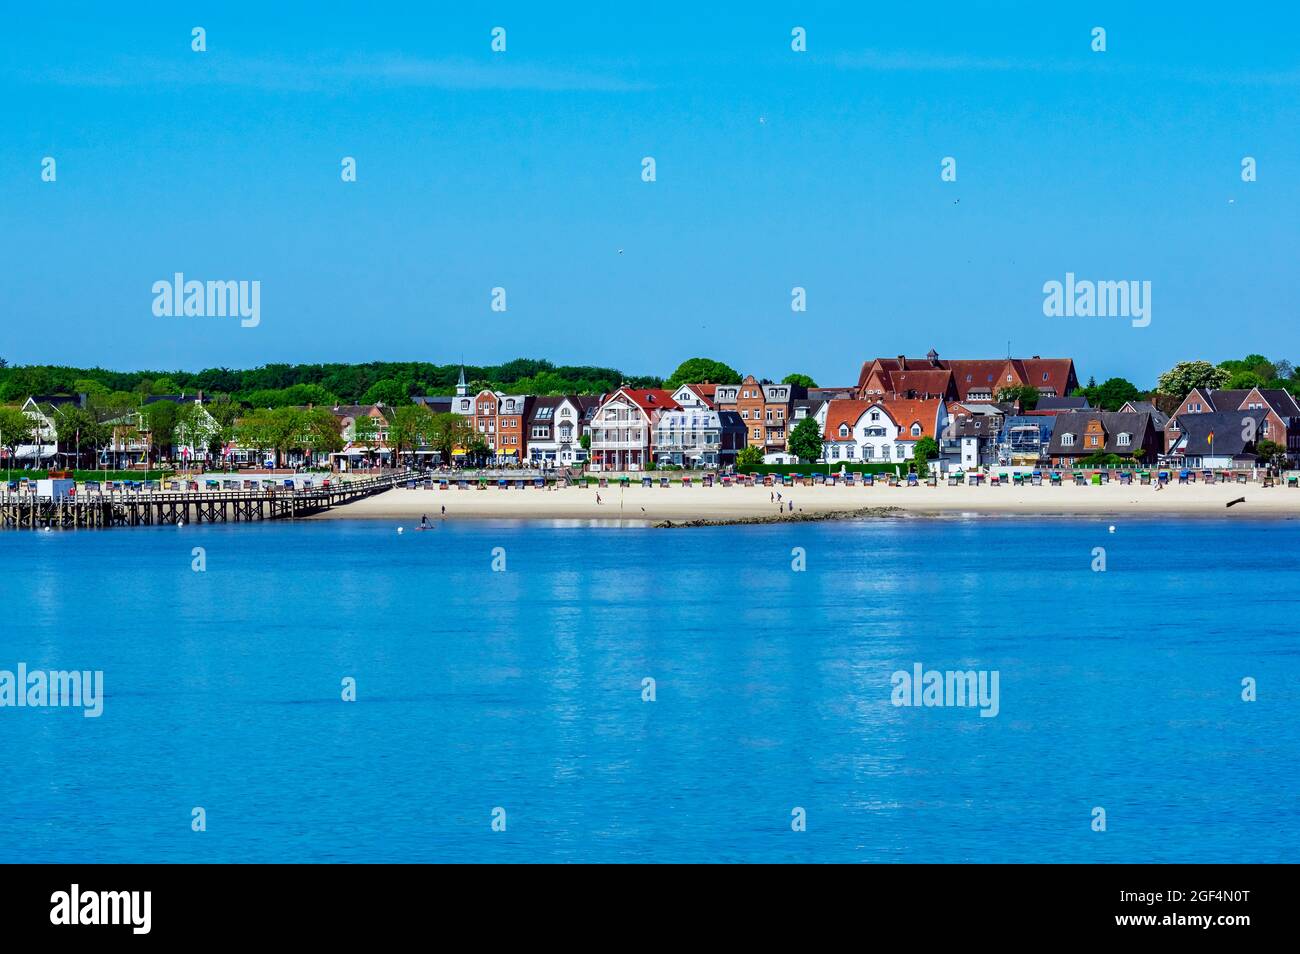 Germania, Schleswig-Holstein, Wyk auf Fohr, cielo sereno sopra la città costiera sull'isola di Fohr in estate Foto Stock